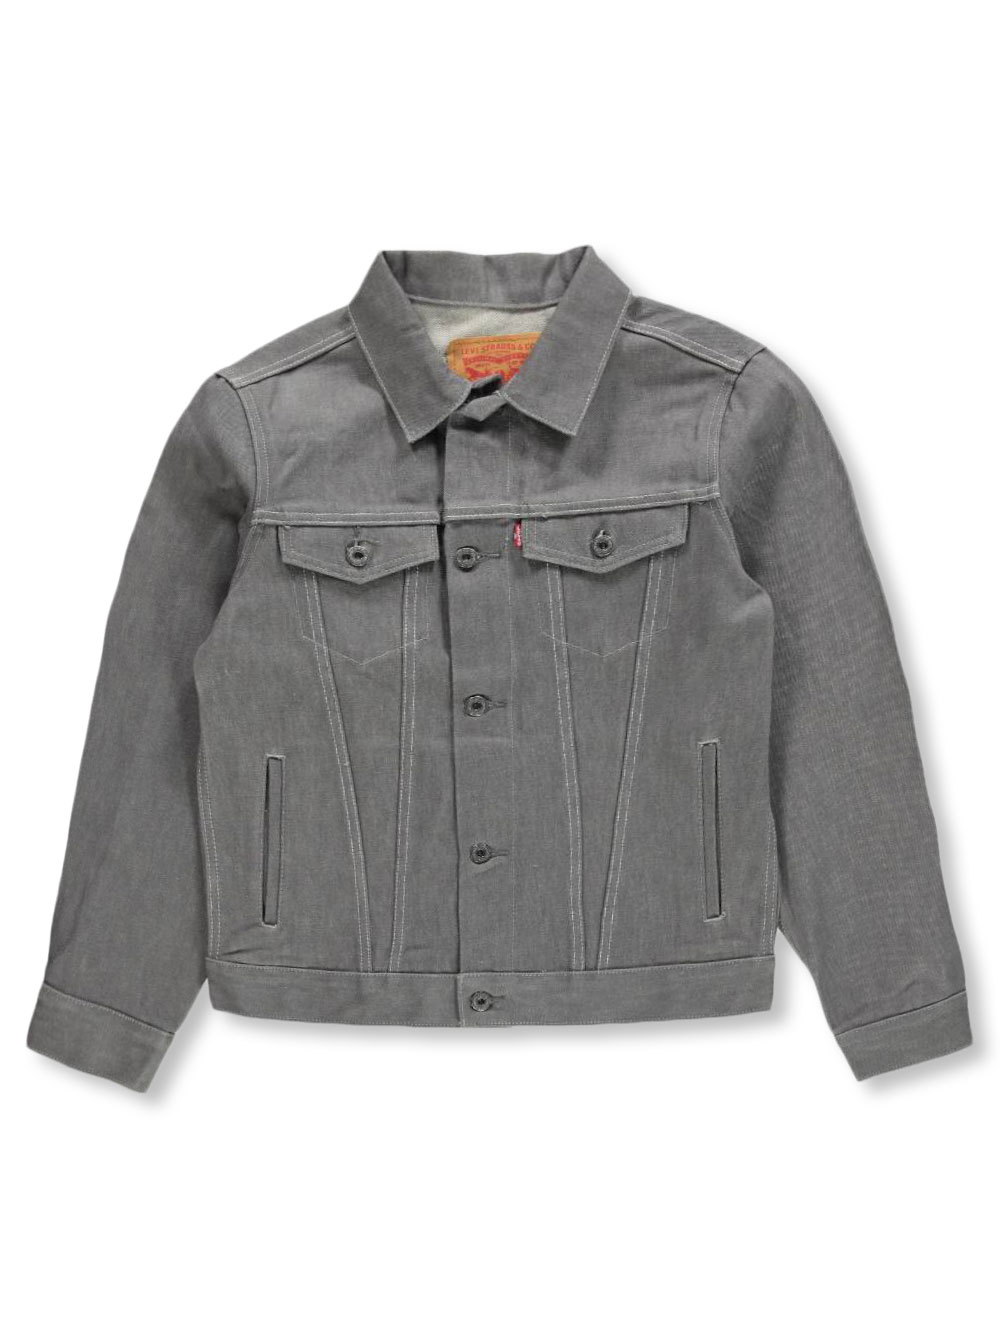 levi's gray jacket